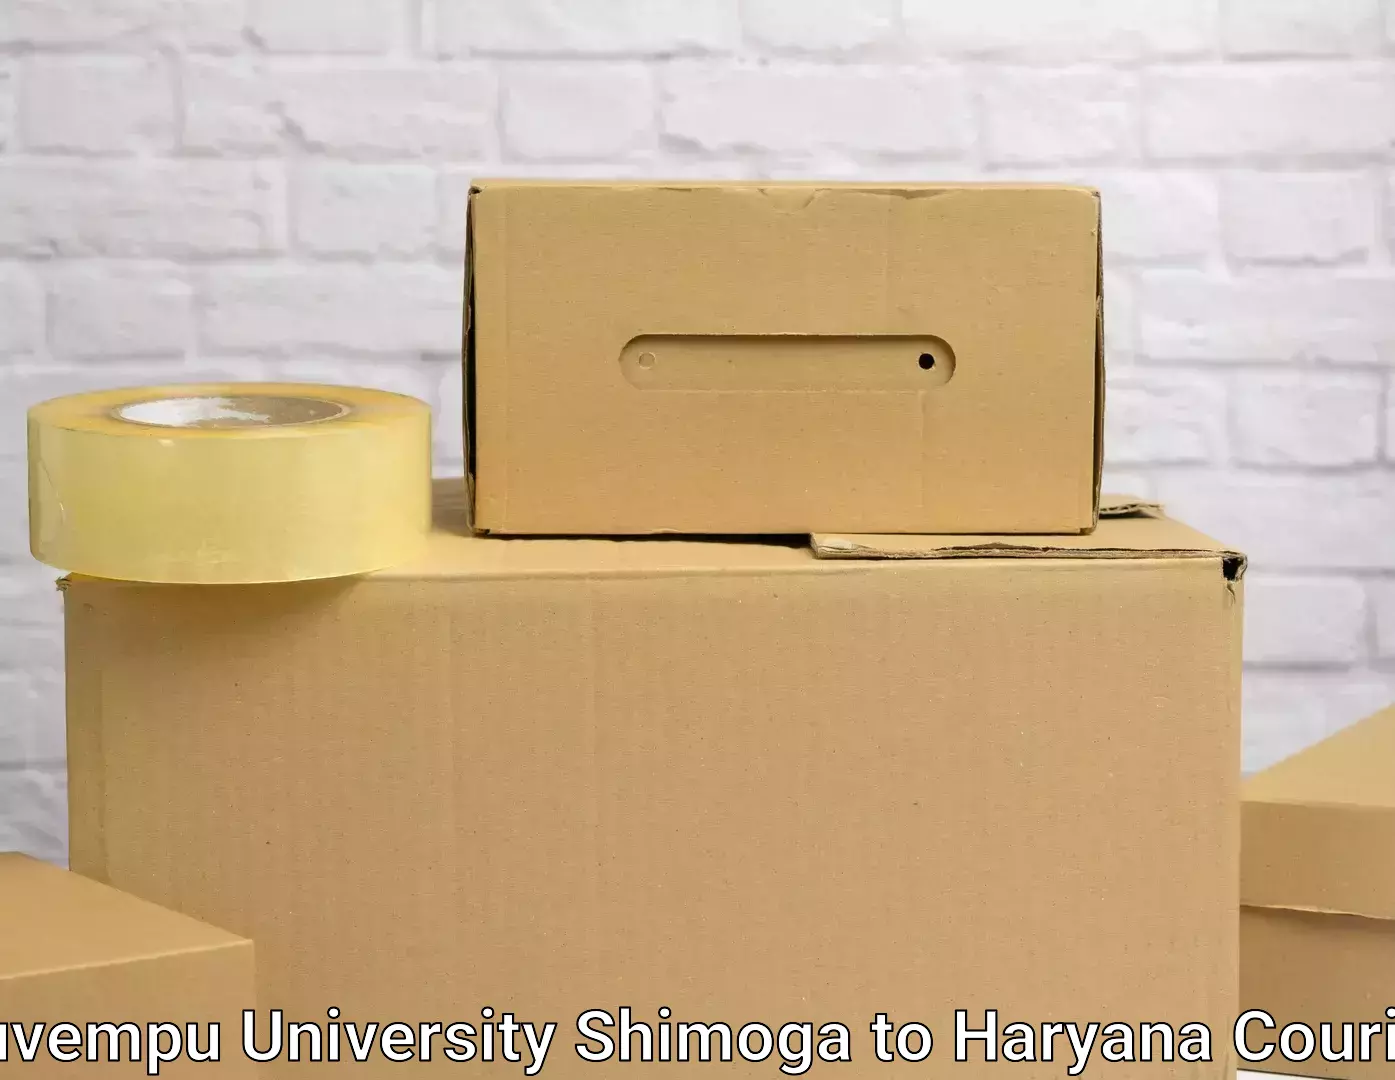 Furniture transport services Kuvempu University Shimoga to Kurukshetra University